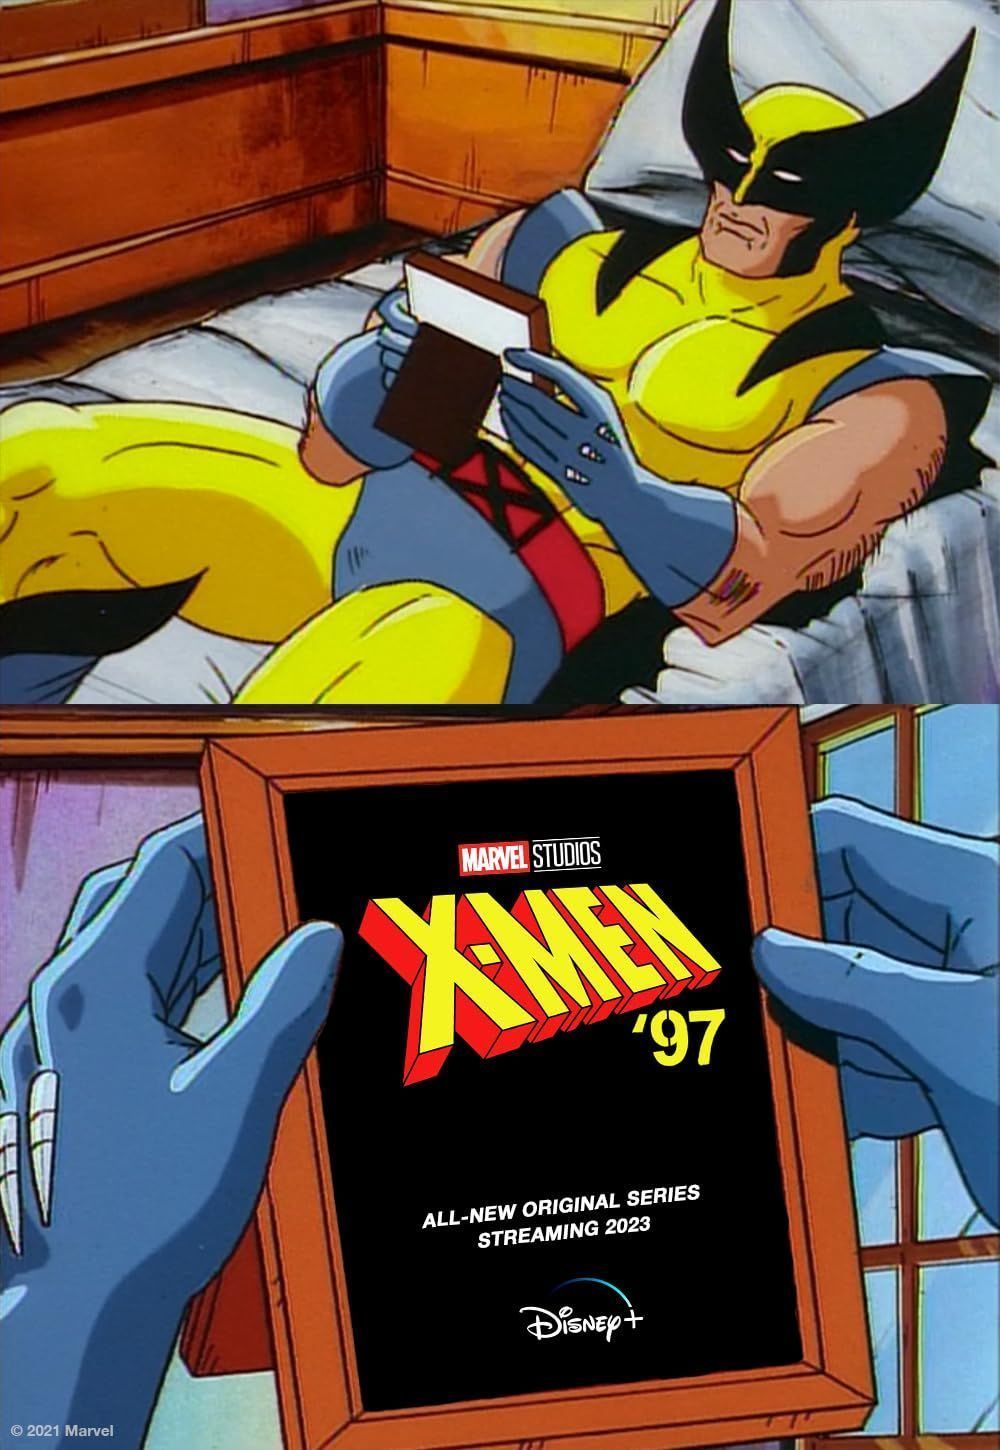 X-Men 97 (2024) Season 1 English (Episode 05) TV Series download full movie